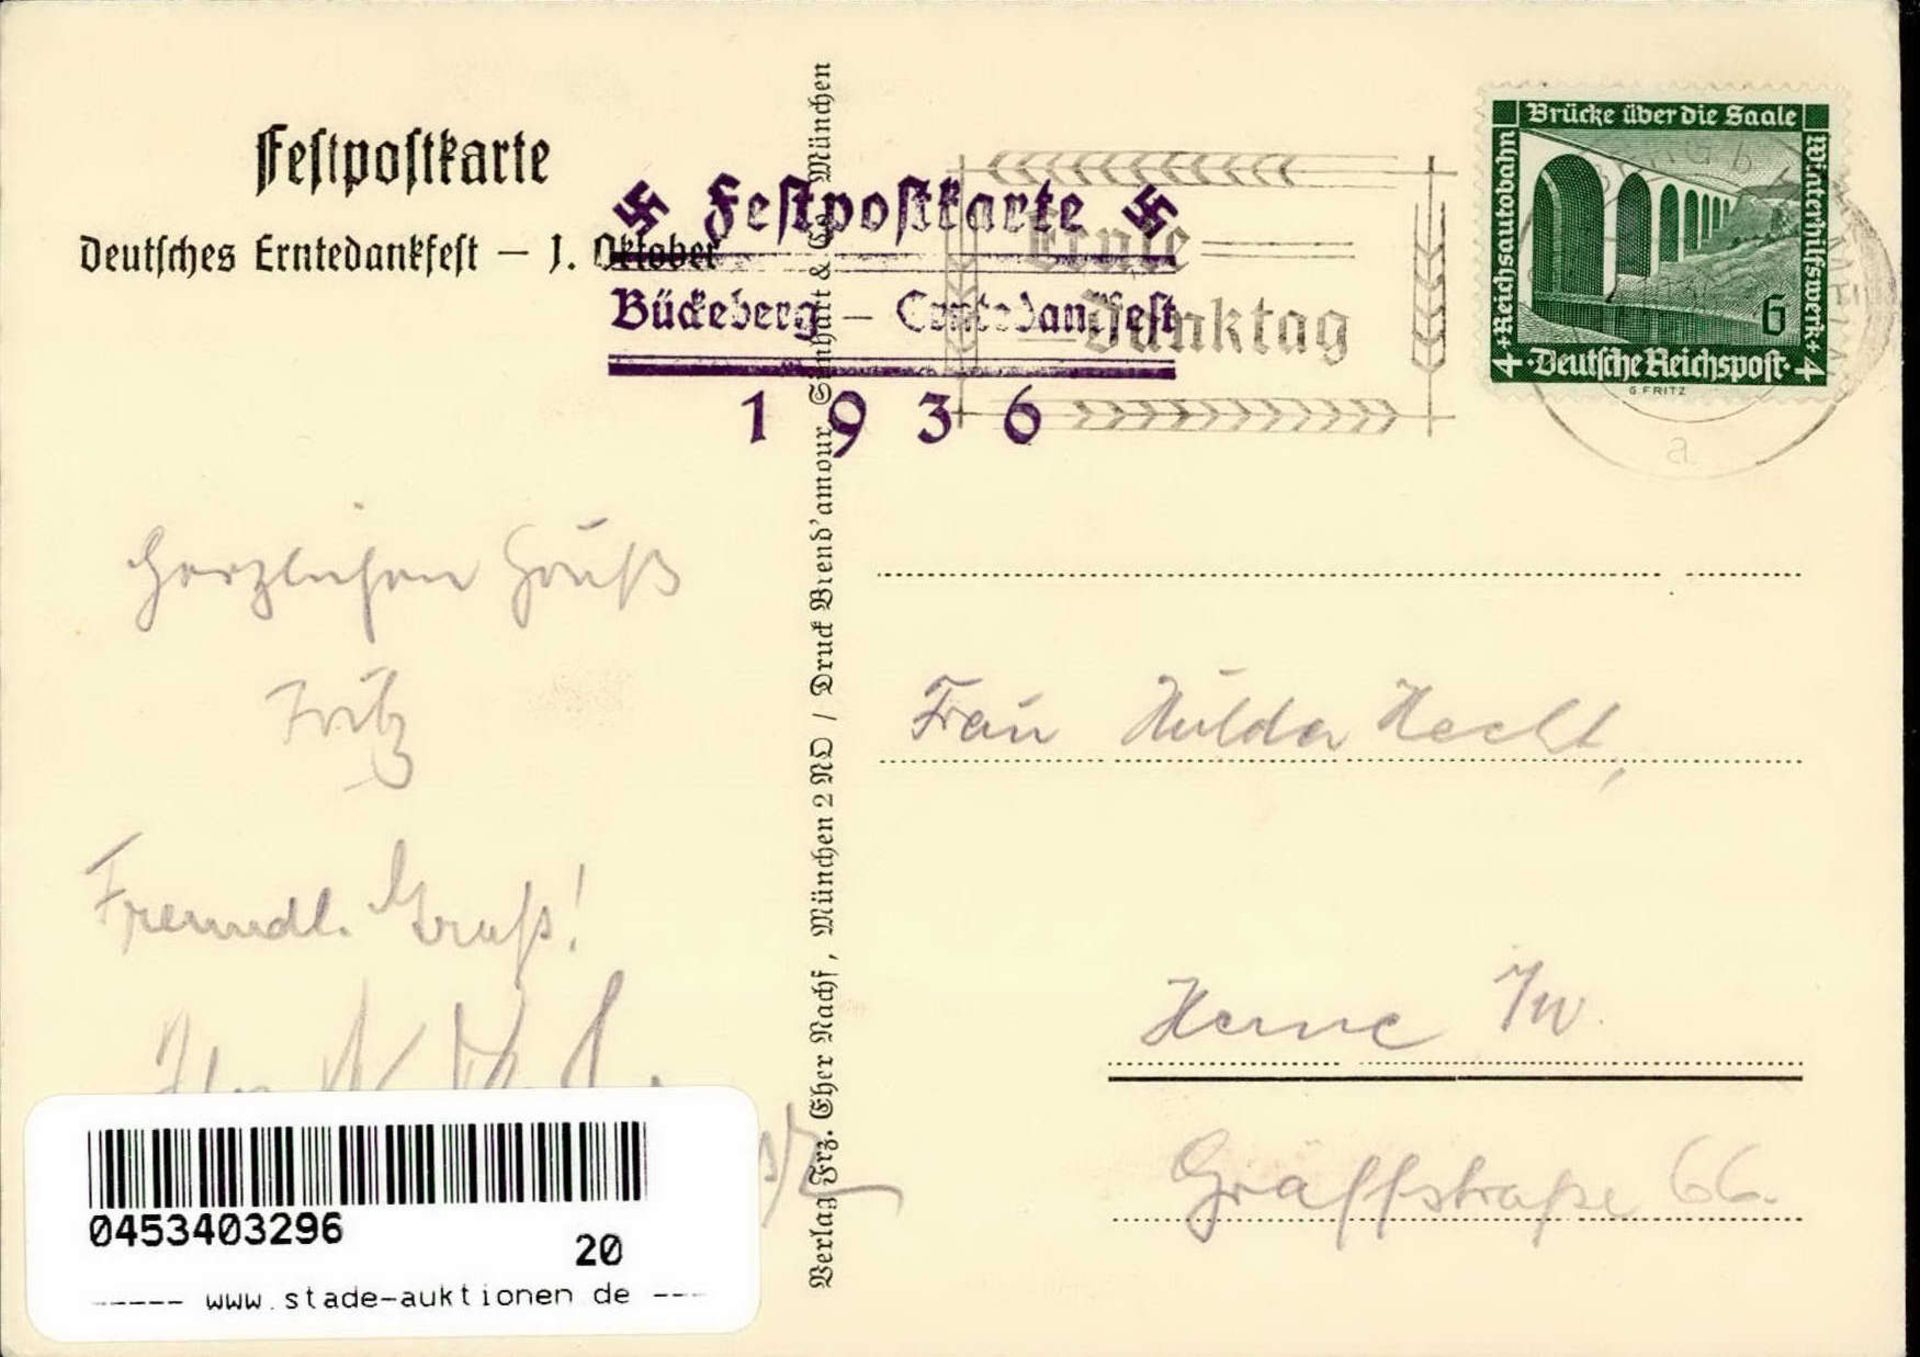 BÜCKEBERG WK II - Festpostkarte DEUTSCHES ERNTEDANKFEST 1936 S-o Künstlerkarte sign. A.Reich I - Image 2 of 2